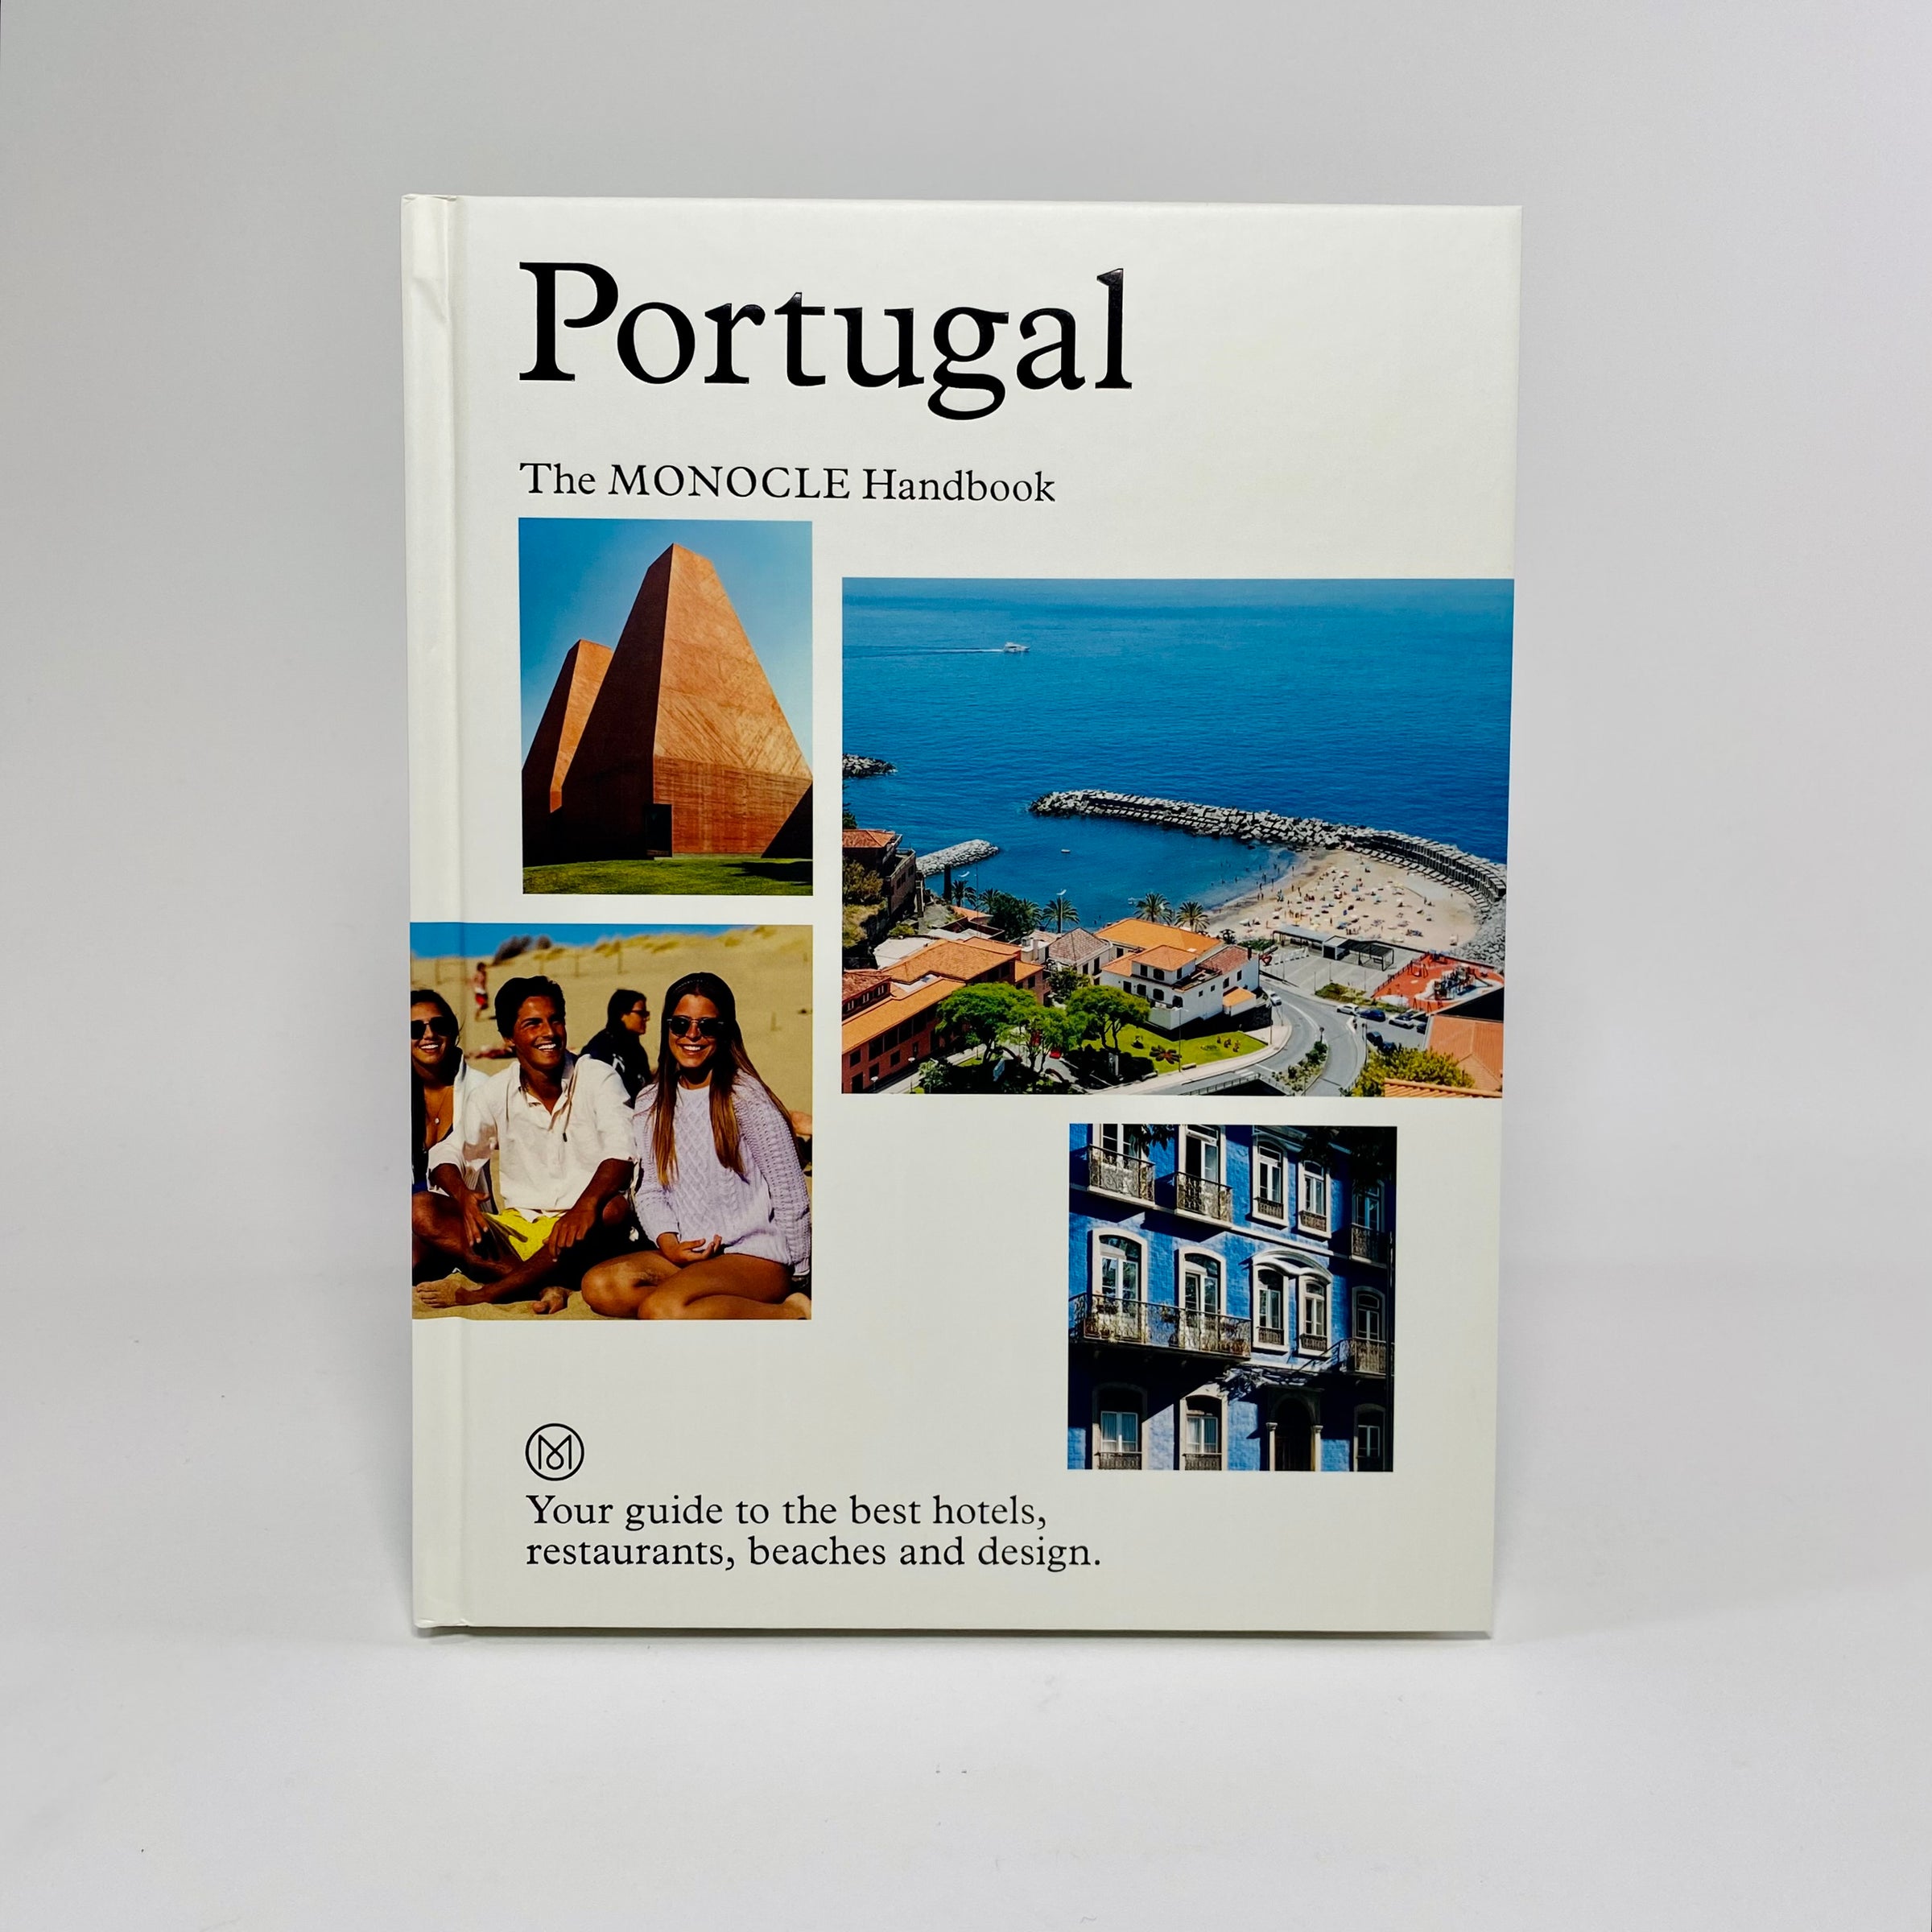 Guia de Portugal publicado pela 'Monocle' com ilustrações